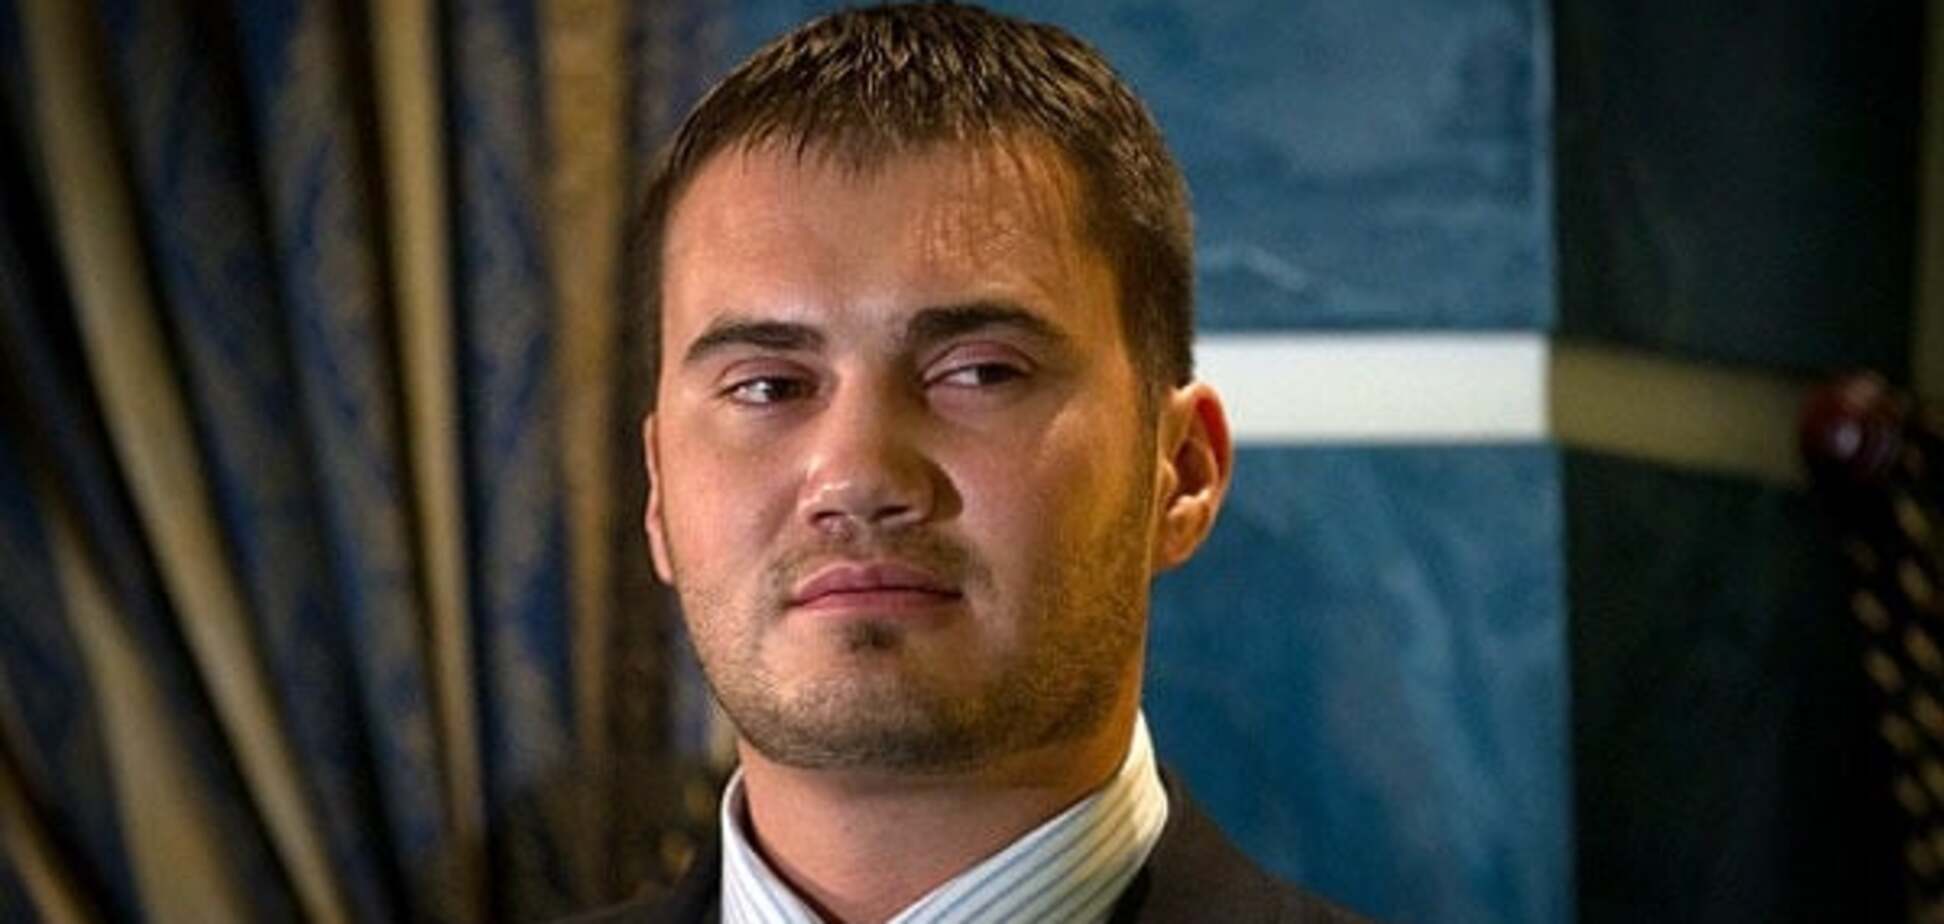 Виктор Янукович-младший